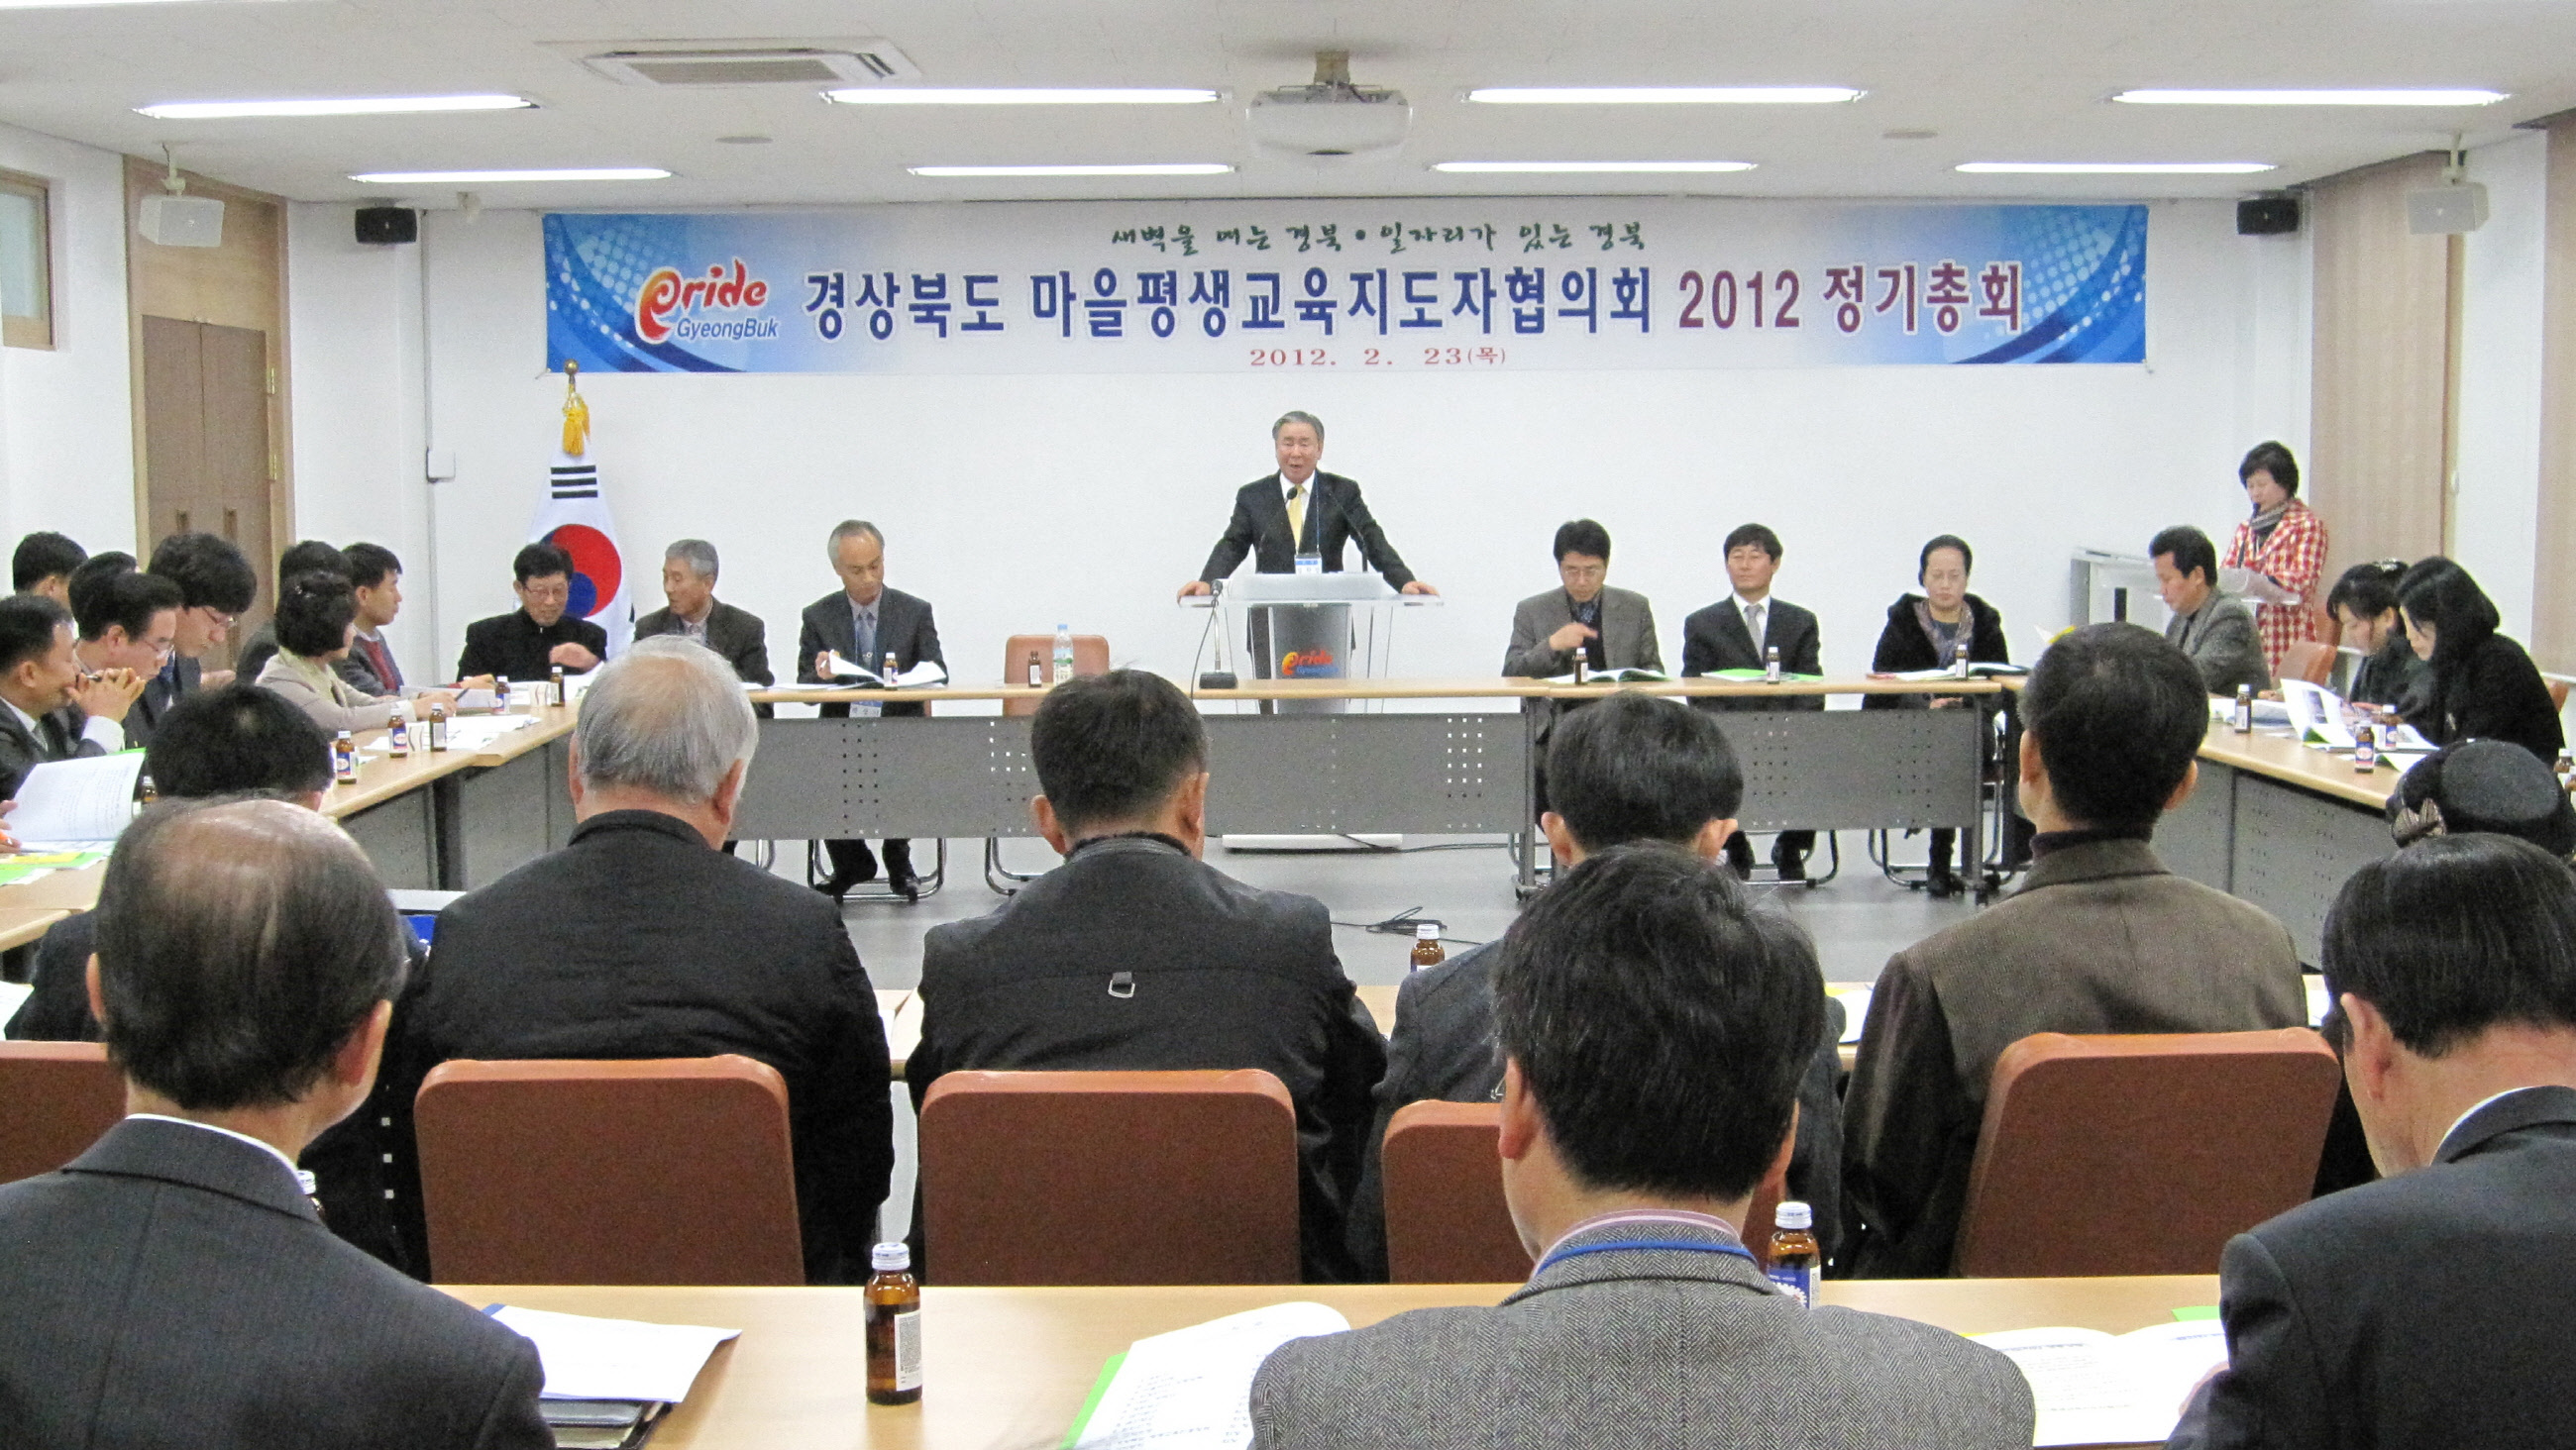 경상북도 마을평생교육지도자협의회 2012년도 정기총회